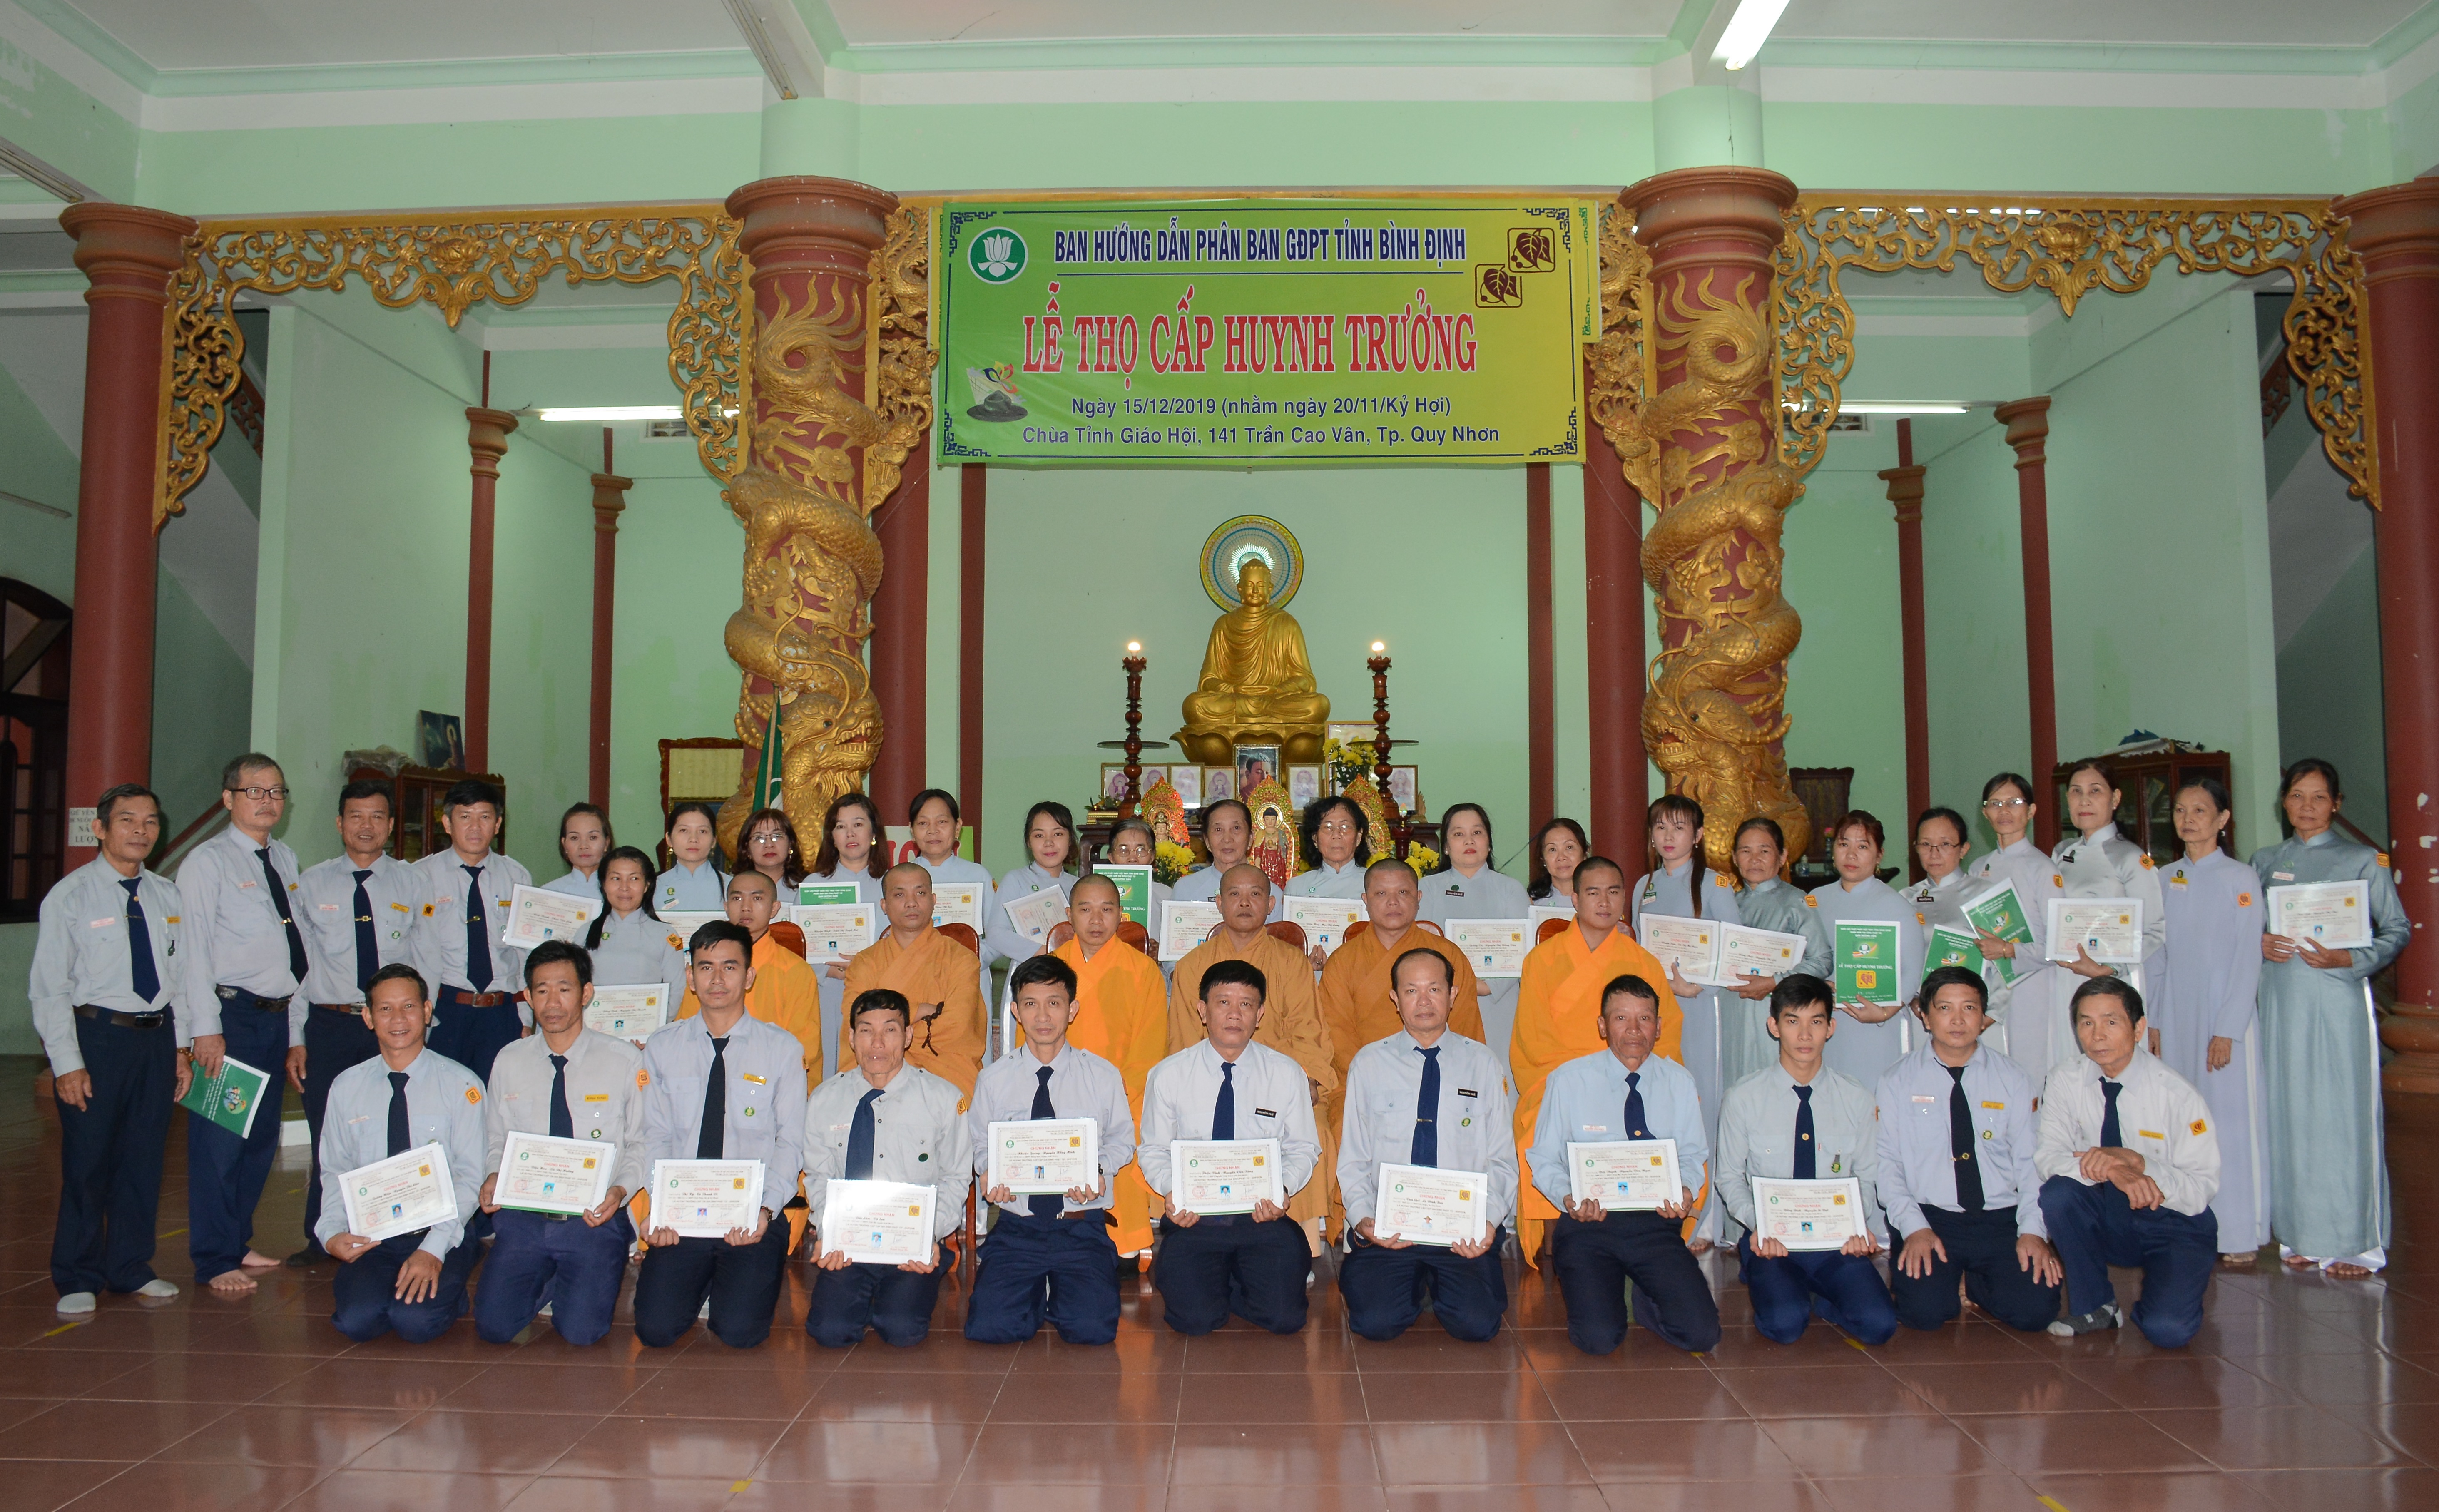 GĐPT tỉnh Bình Định: Lễ thọ cấp Huynh Trưởng năm 2019